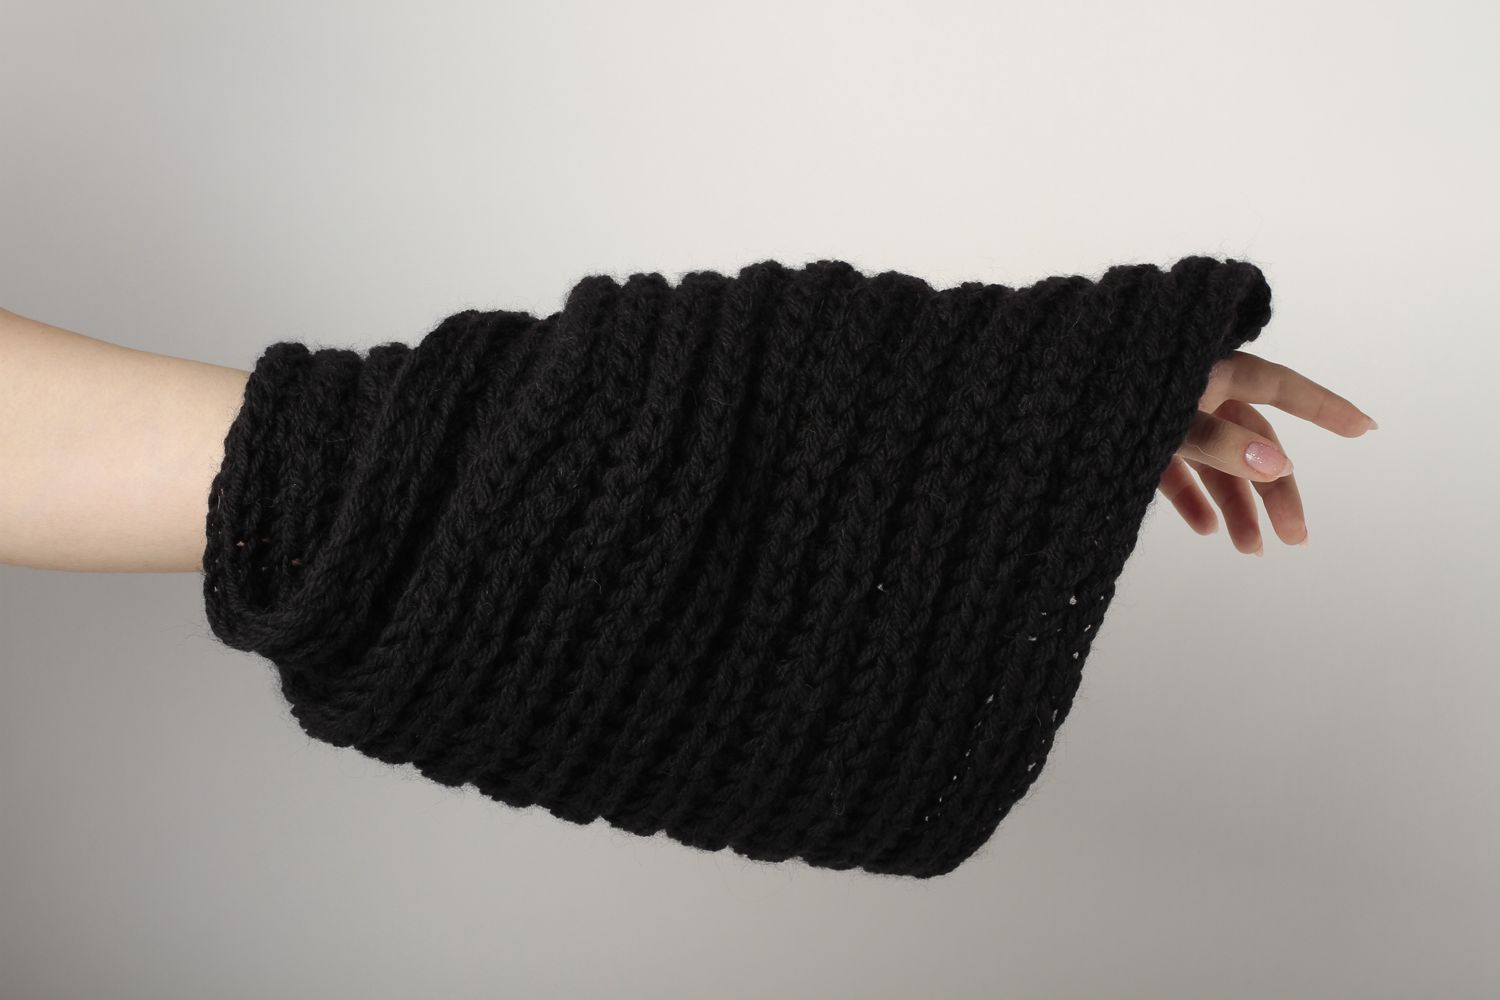 Écharpe tricot faite main Vêtement femme homme laine couleur noire Idée cadeau photo 1